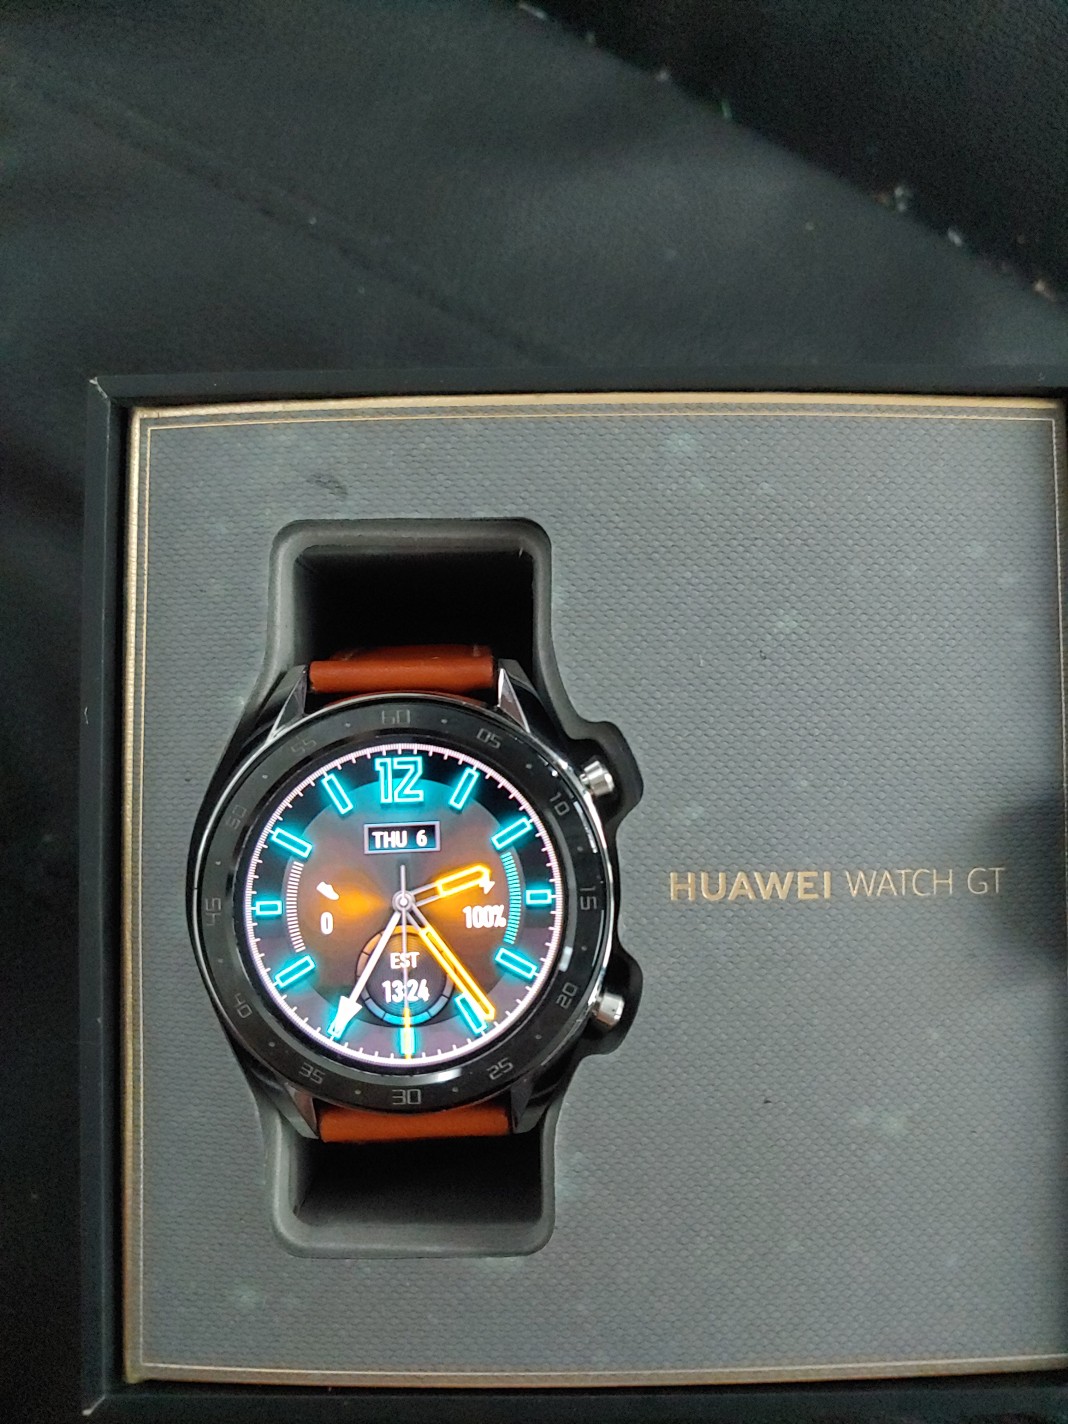 joyas, relojes y accesorios - Reloj Inteli Huawei GT FTN-B19 NEGOCIABLE
NO INTERCAMBIO